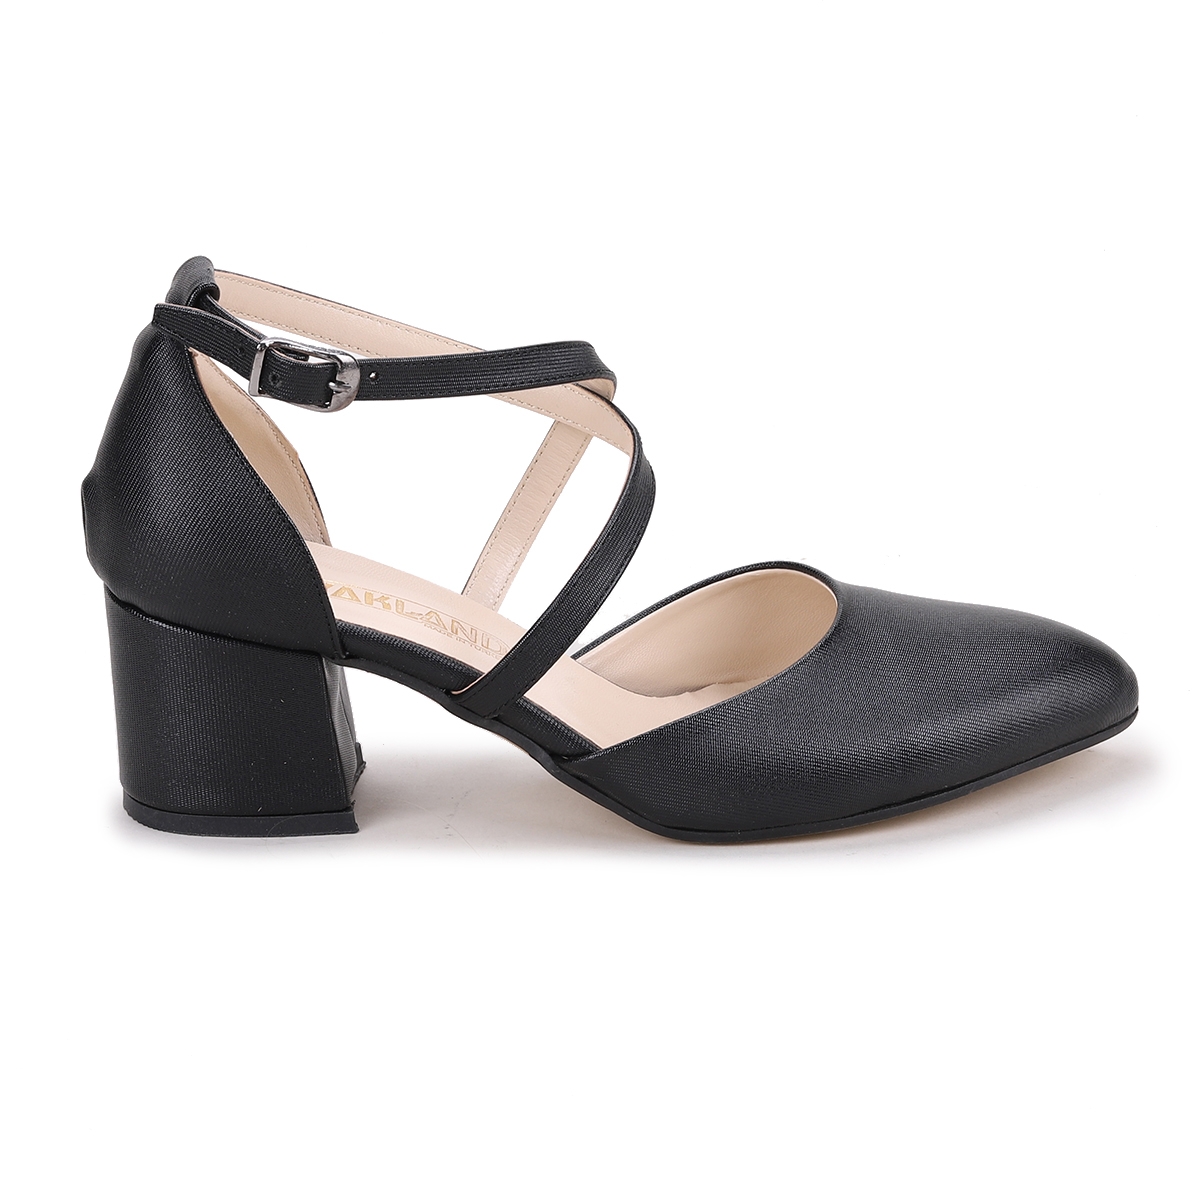 Flo Tier 1990.120 Parlak 5 Cm Topuk Kadın Sandalet Ayakkabı Siyah. 4